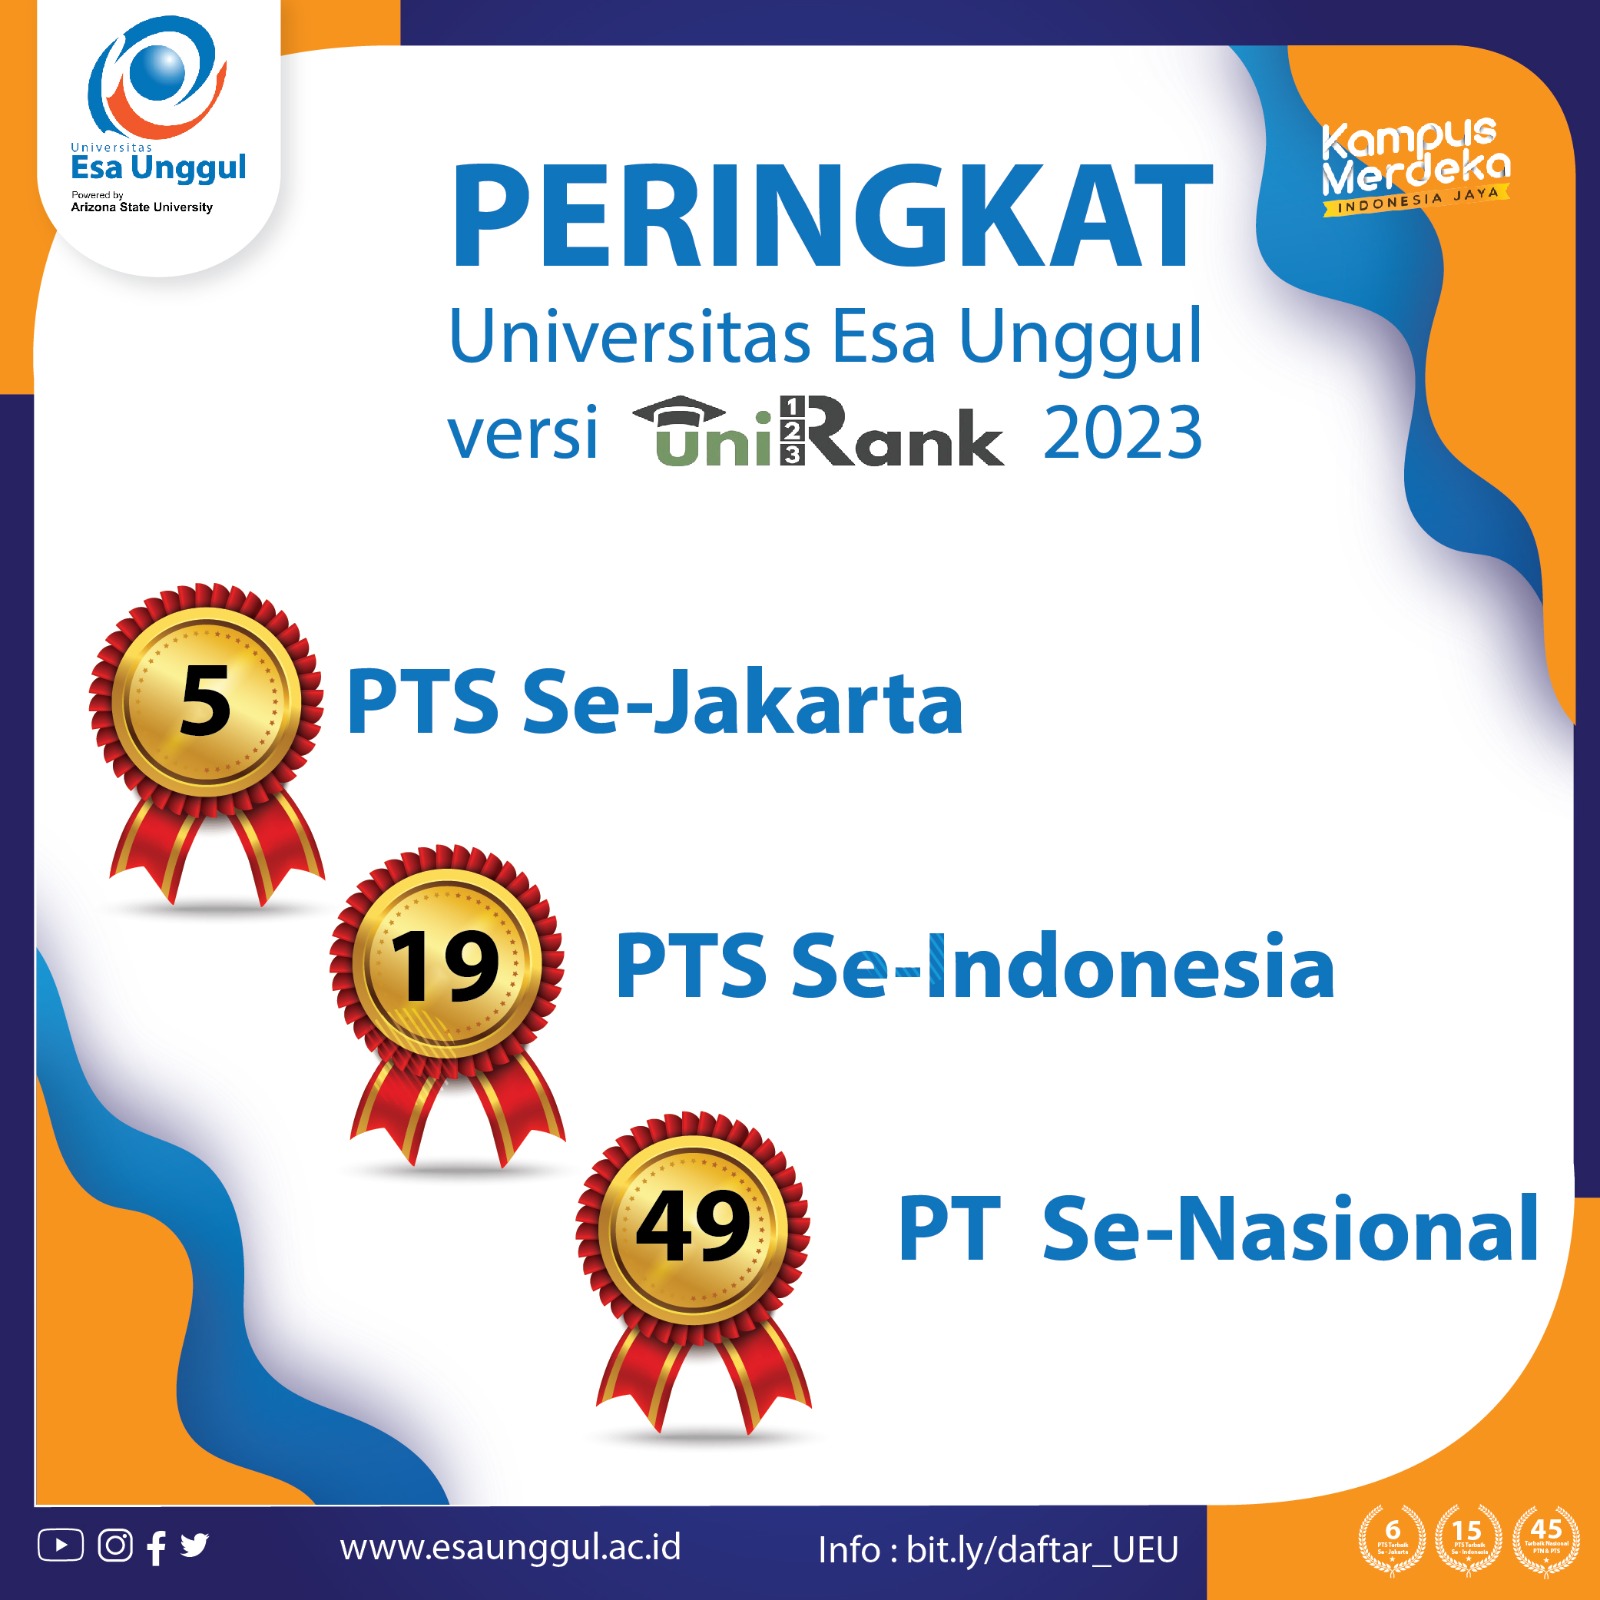 UniRank Universitas Esa Unggul Masuk 50 Besar Perguruan Tinggi Terbaik Indonesia versi 4ICU 